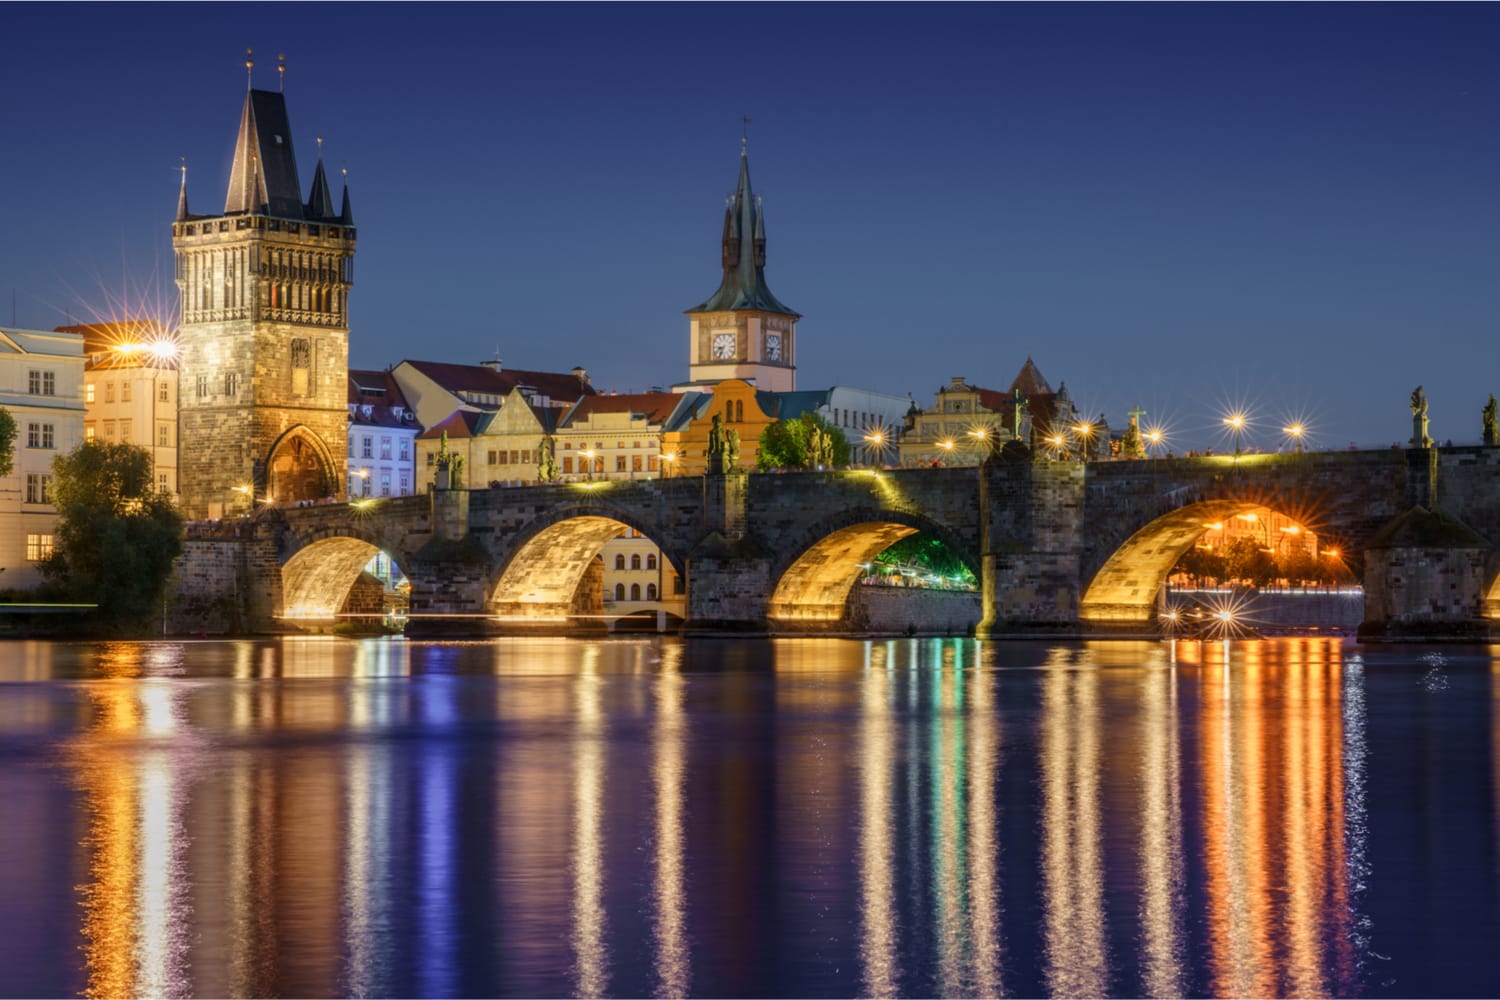 Νυχτερινή άποψη στη γέφυρα του Καρόλου, Πράγα, Δημοκρατία της Τσεχίας